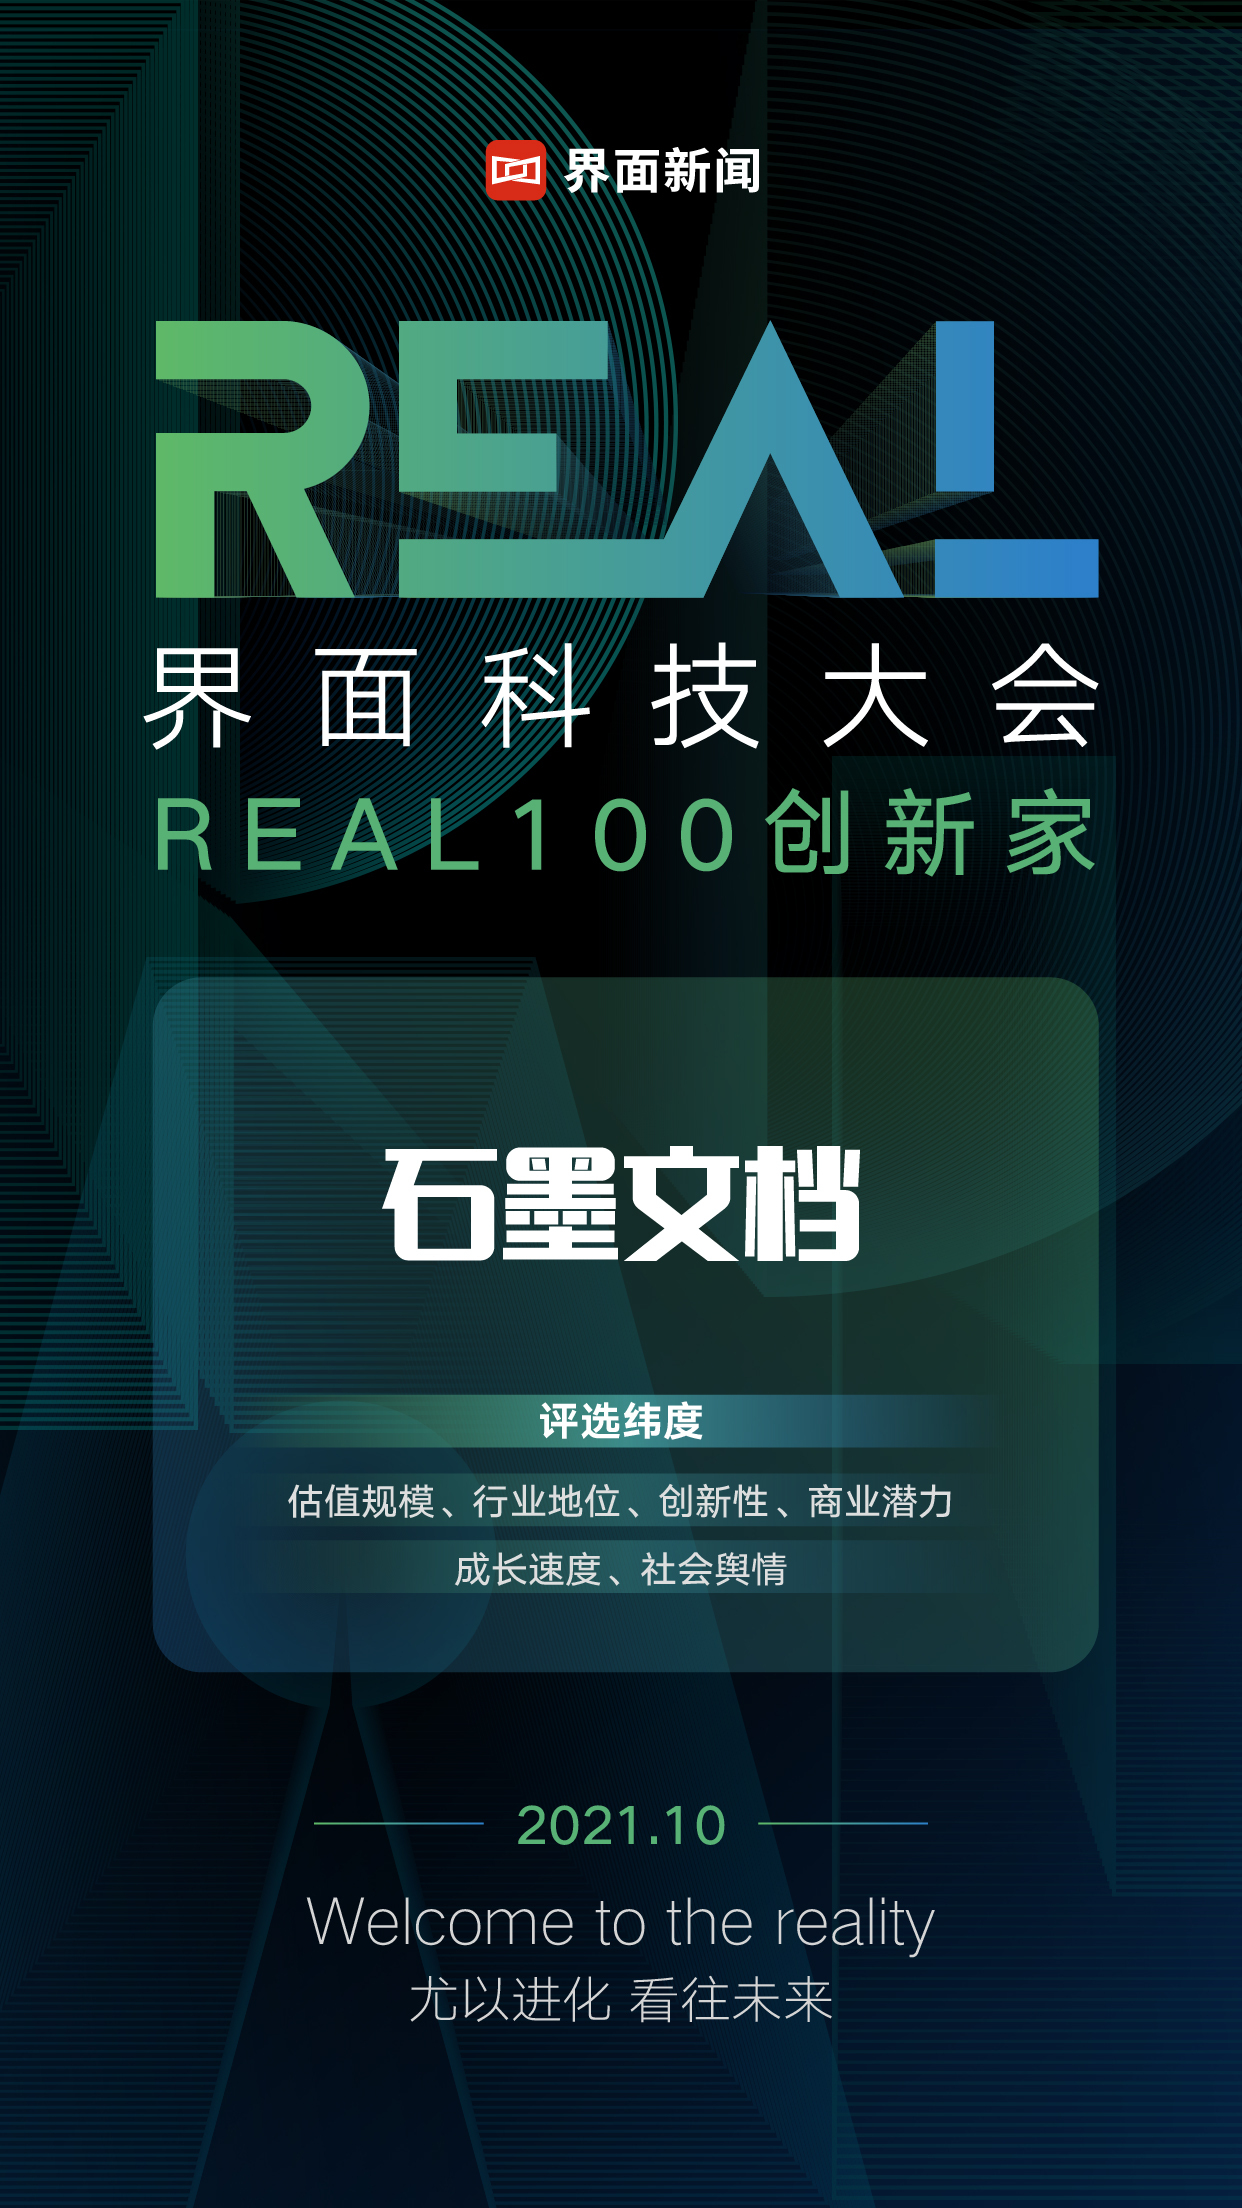 石墨文檔入選界面新聞「REAL100 創新家」榜單企業服務 20 強！